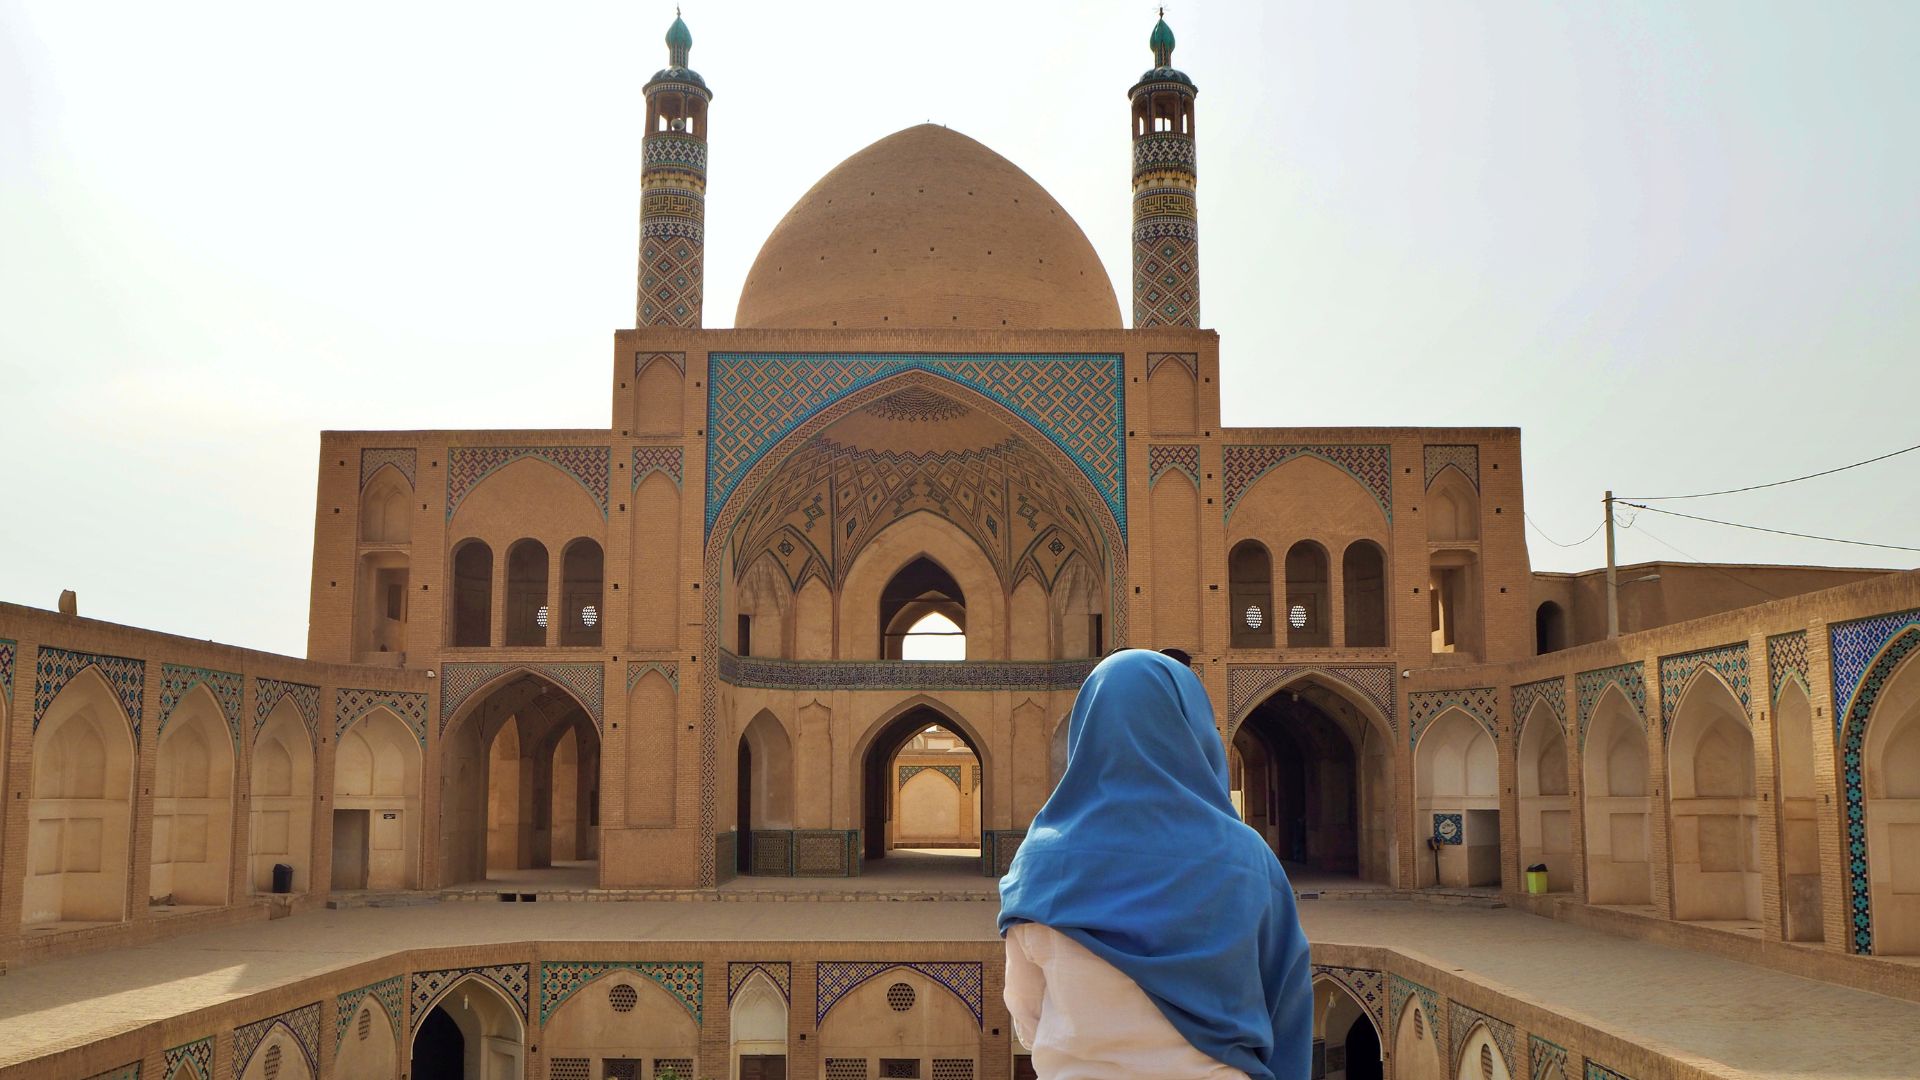 Une femme qui porte le voile hijab devant une mosquée, celle d'Agha Bozorg, à Kashan, en Iran.jpg // Source : Elifinatlasi de Pexels